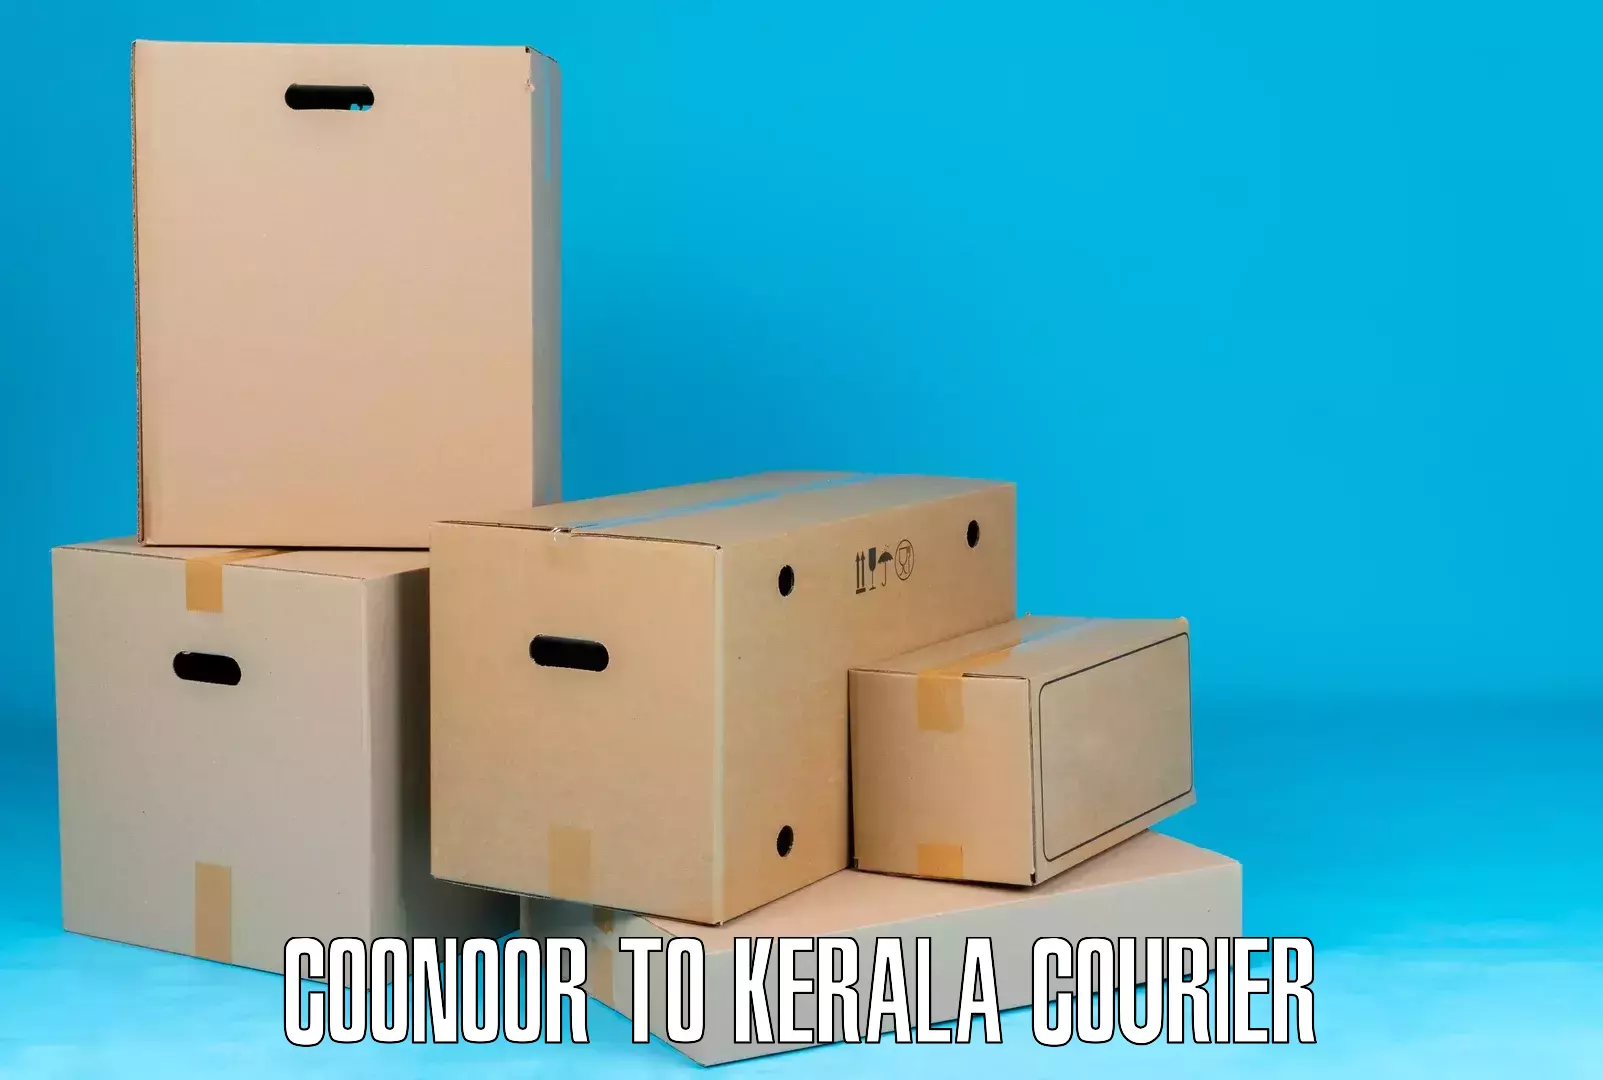 Express courier capabilities Coonoor to Kunnamkulam